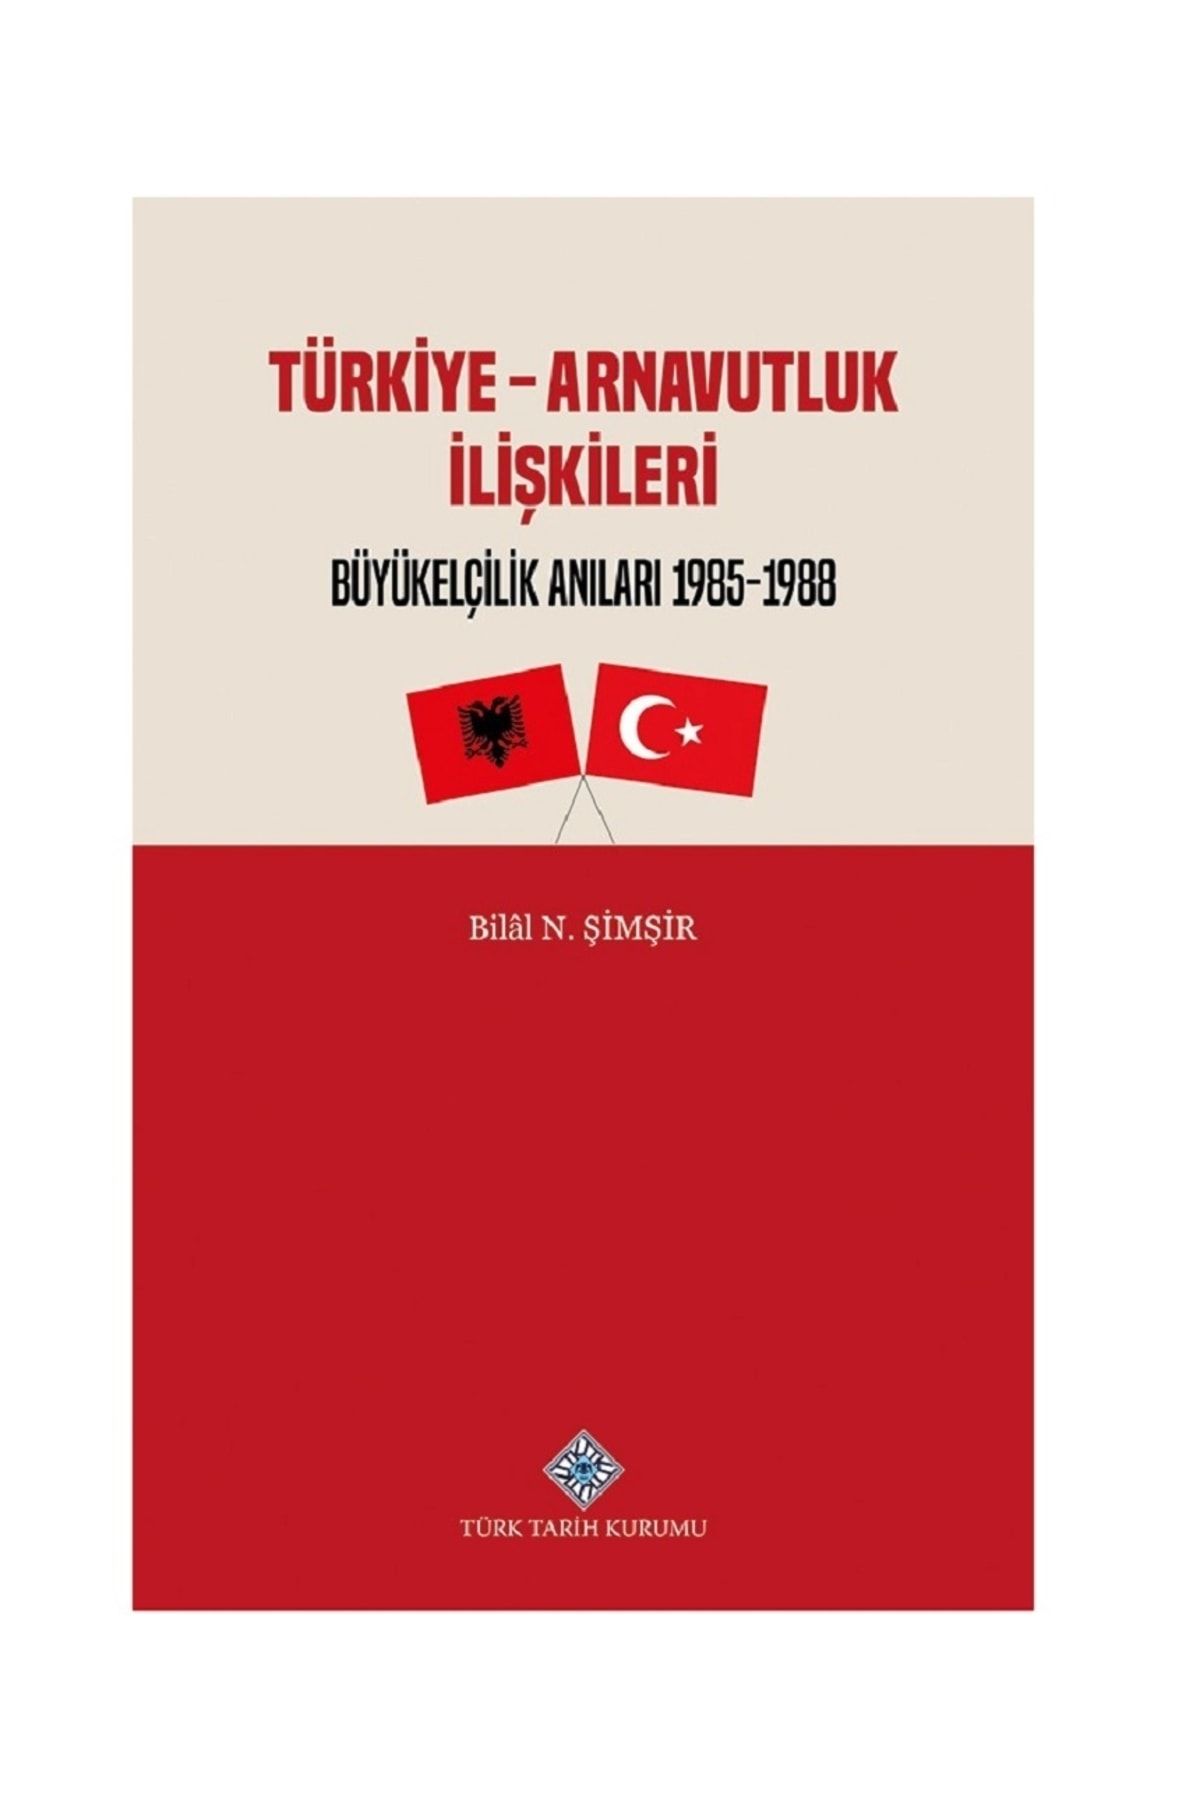 Türk Tarih Kurumu Yayınları Türkiye - Arnavutluk Ilişkileri Büyükelçilik Anıları 1985-1988 / Bilal N. Şimşir